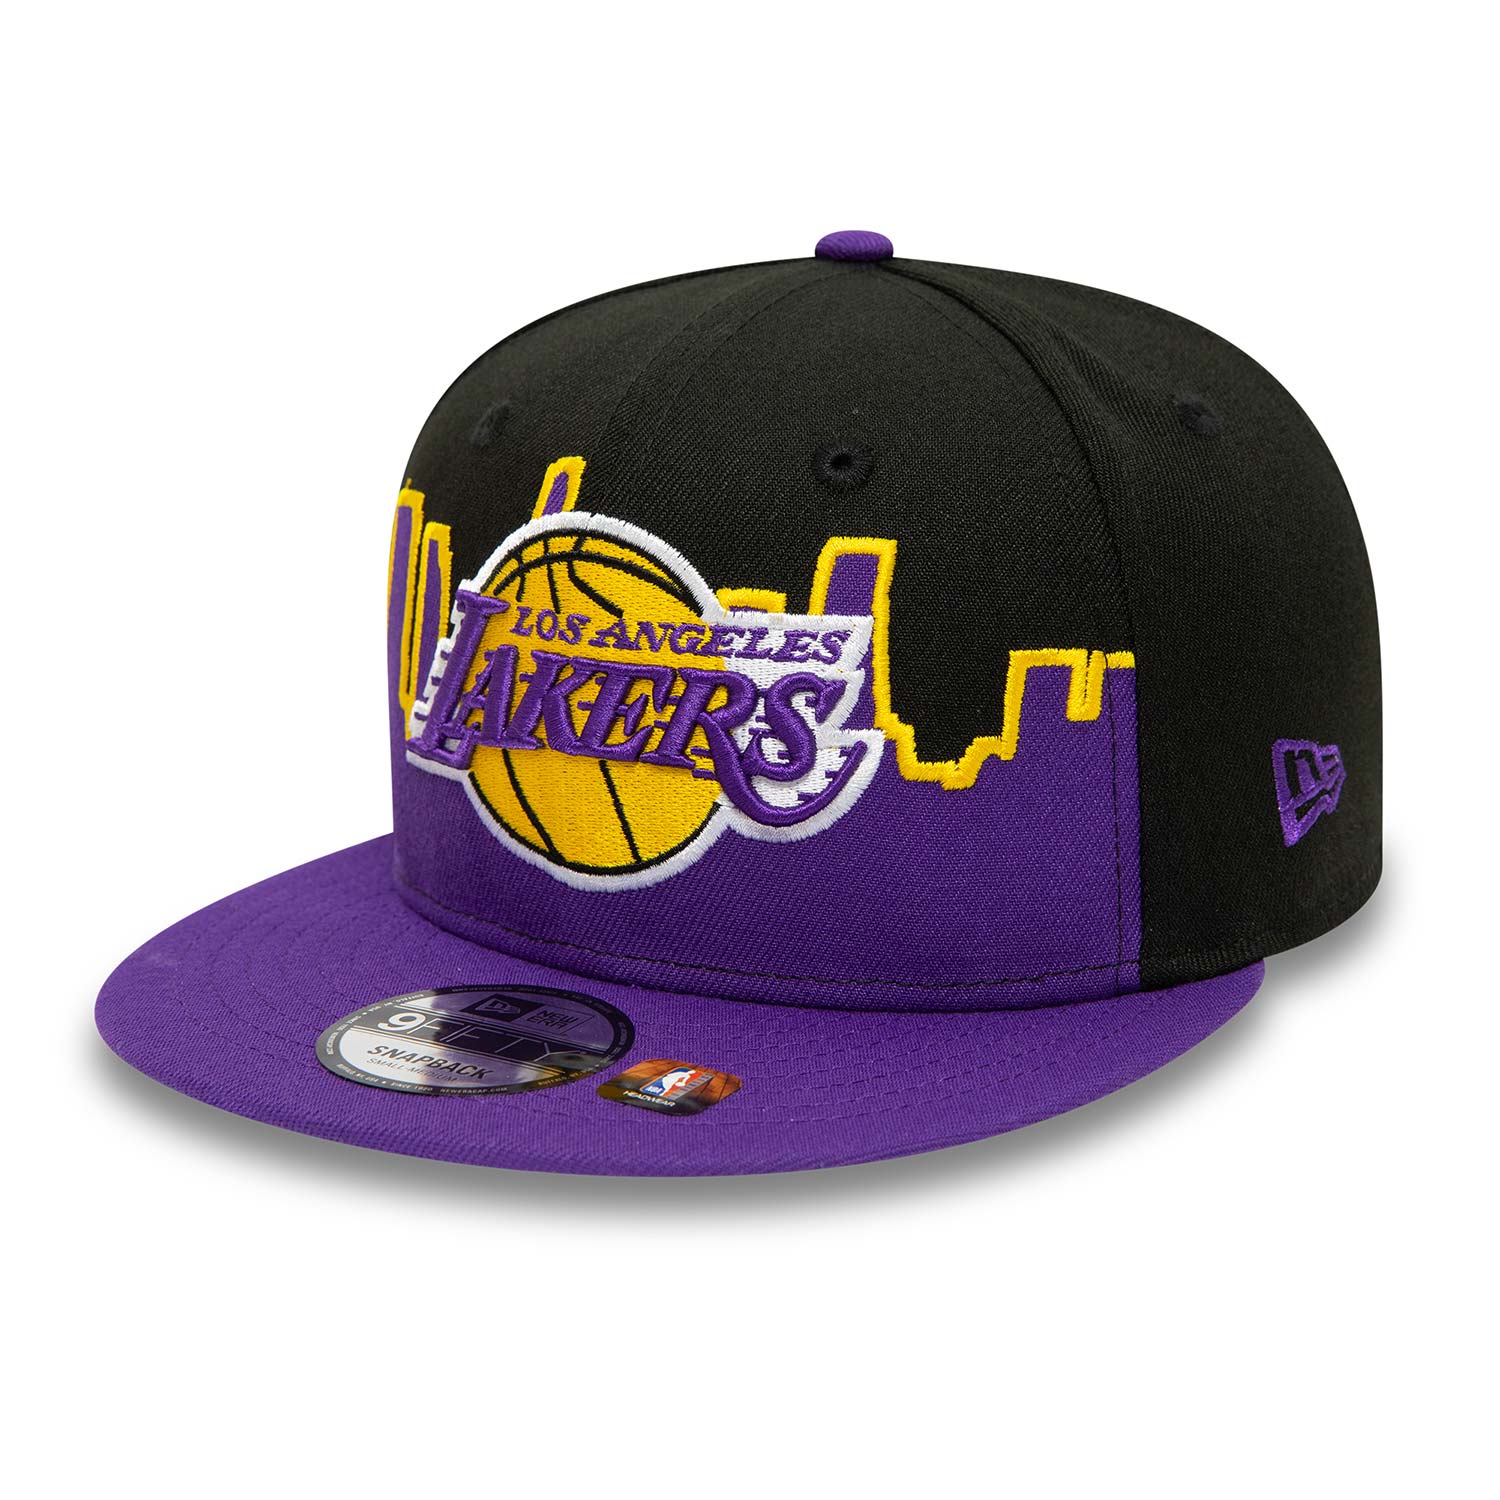 Official New Era NBA Tip Off LA Lakers Black 9FIFTY Cap B9438_750 B9438 ...